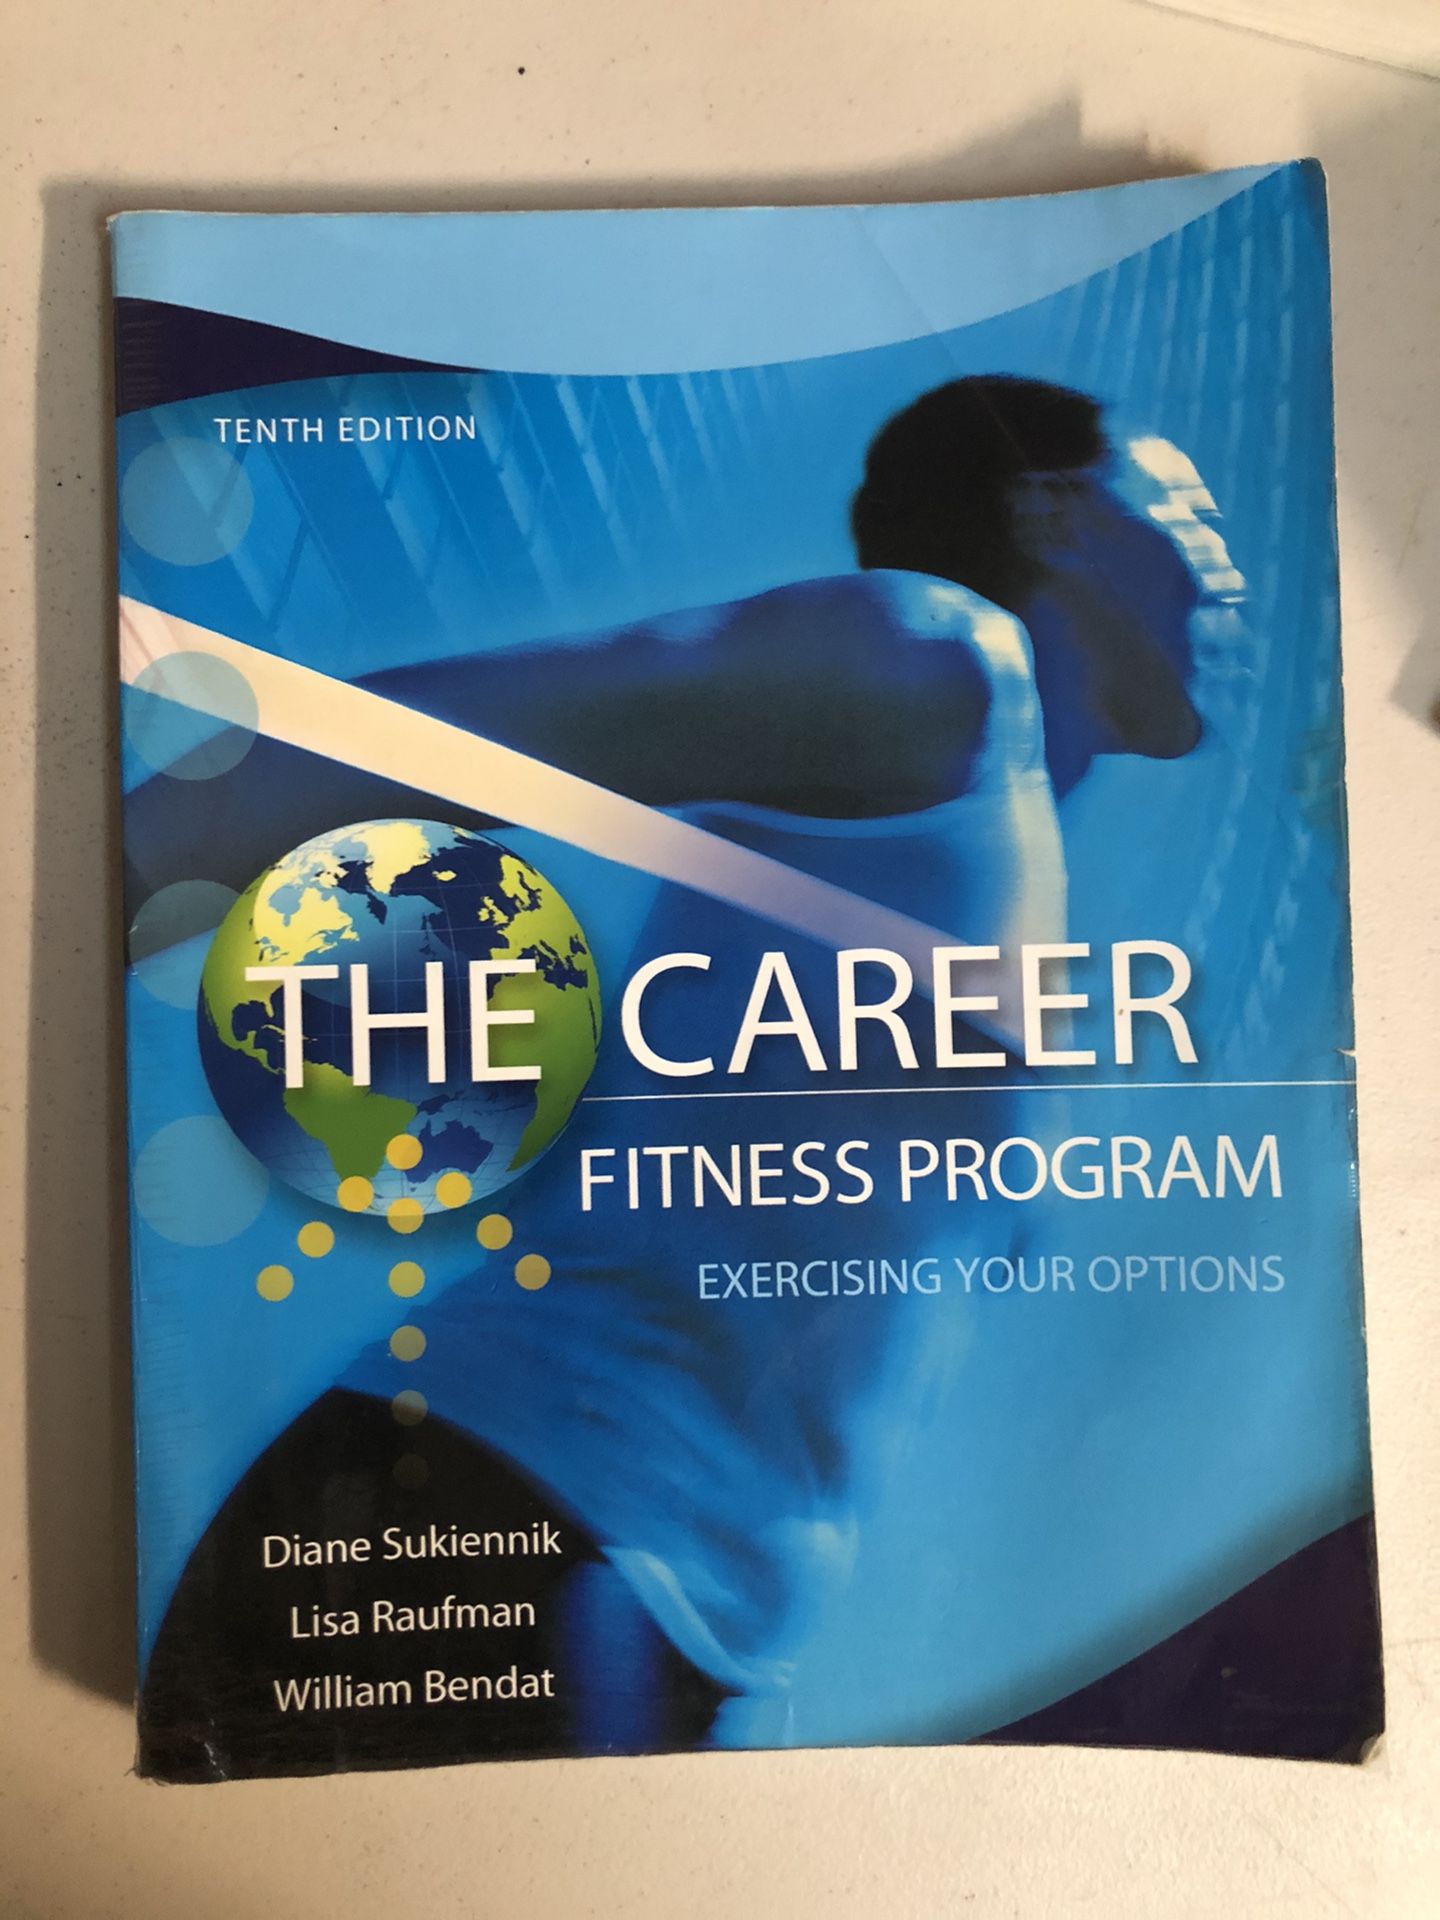 The Career, Fitness Program